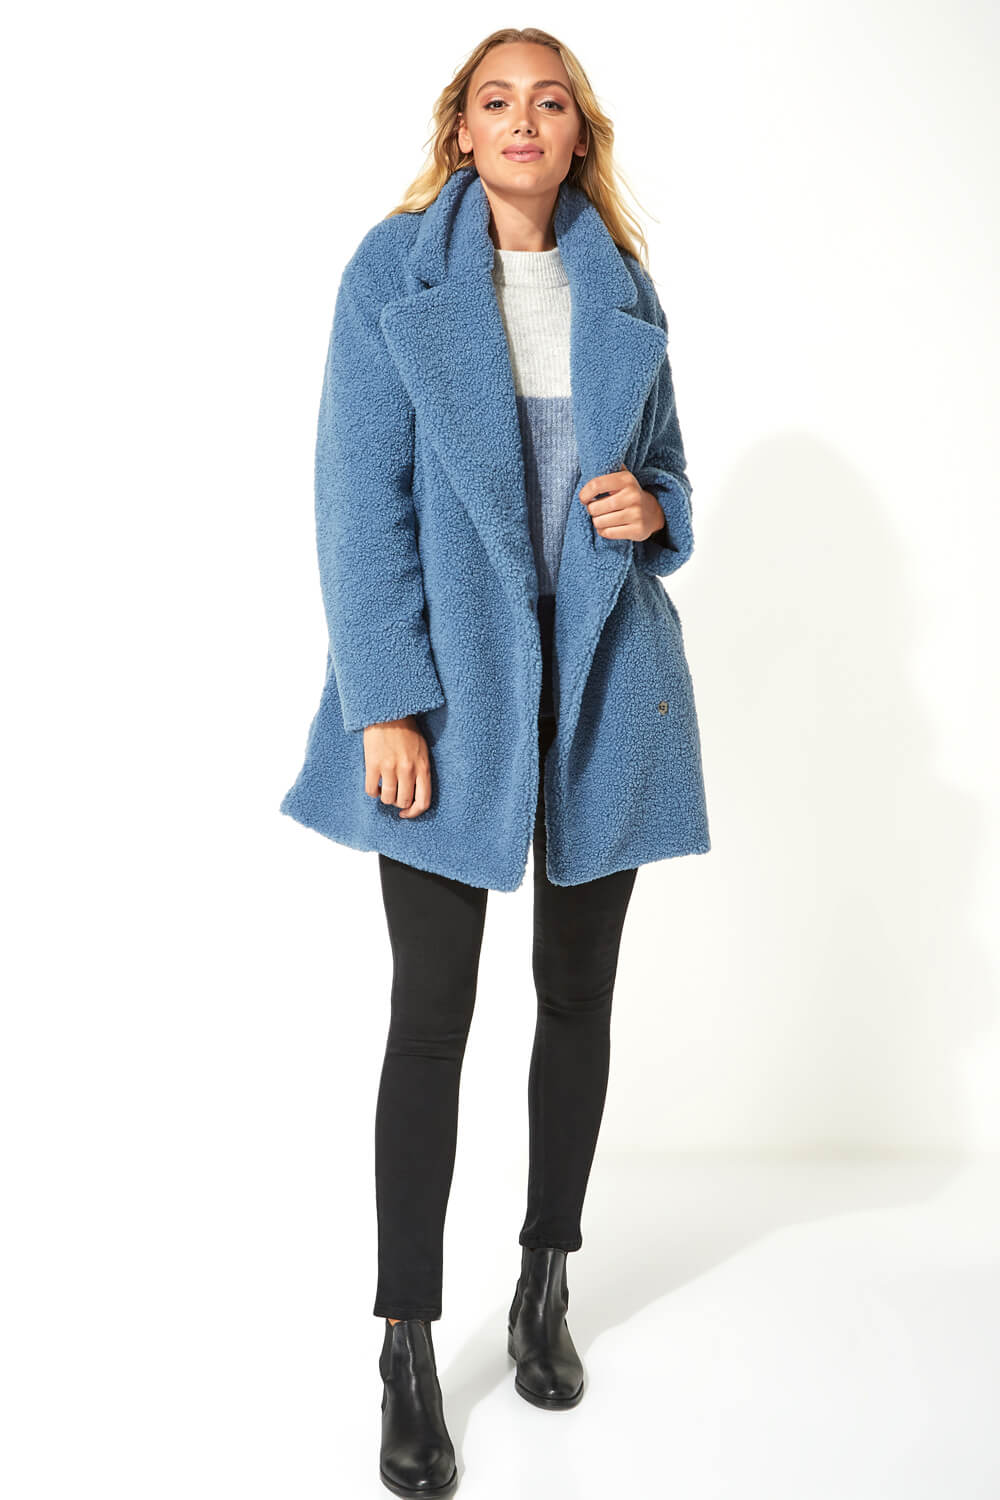 Steel Blue Longline Soft Faux Fur Teddy Coat, Image 2 of 5